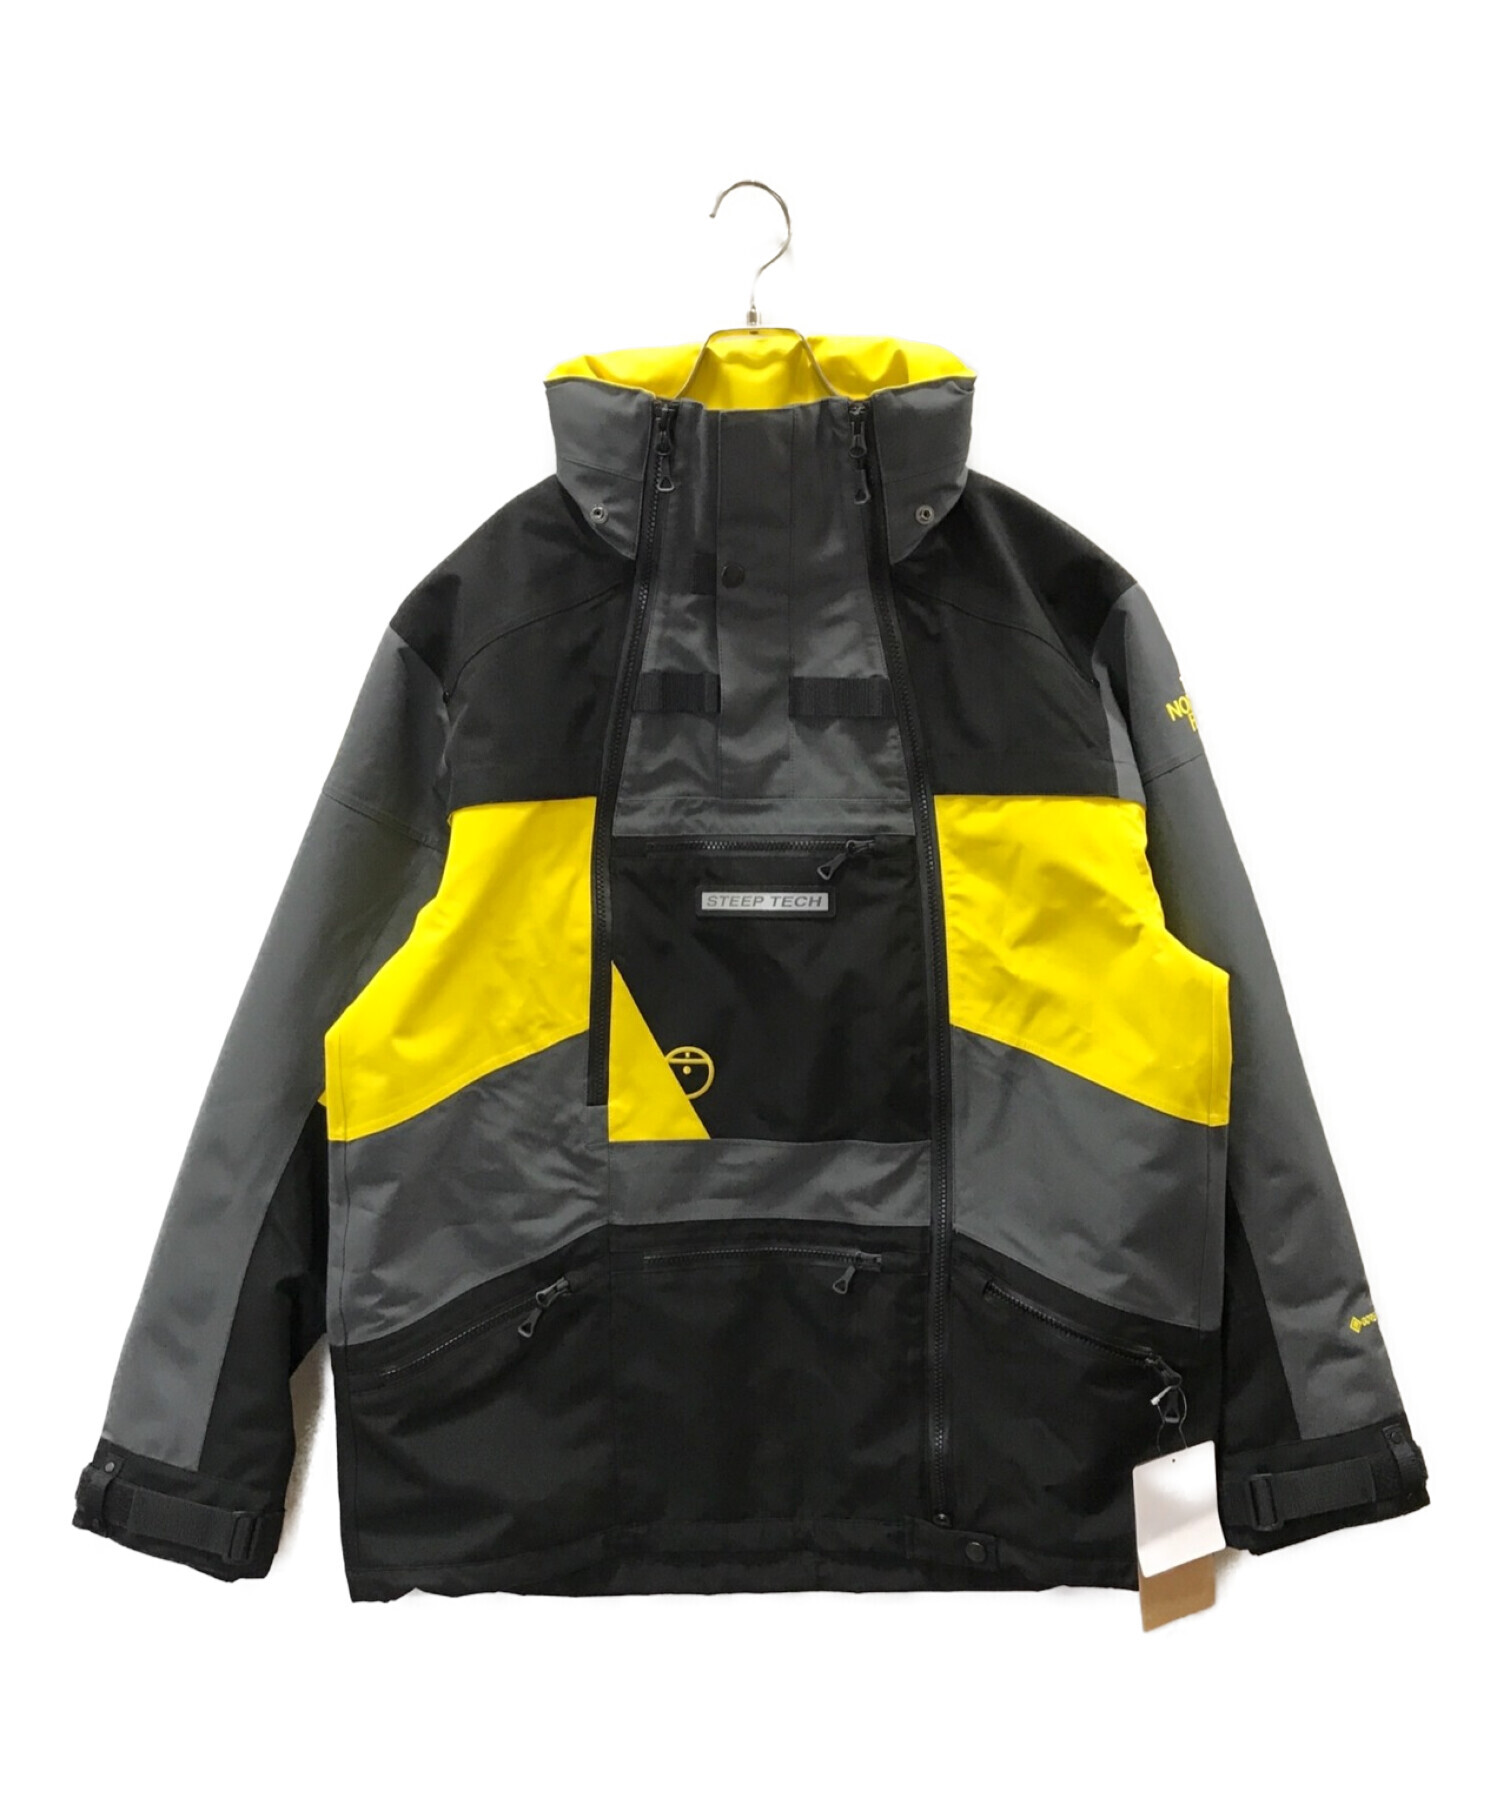 THE NORTH FACE (ザ ノース フェイス) STEEP TECH 96 APOGEE Jacket グレー サイズ:XL 未使用品